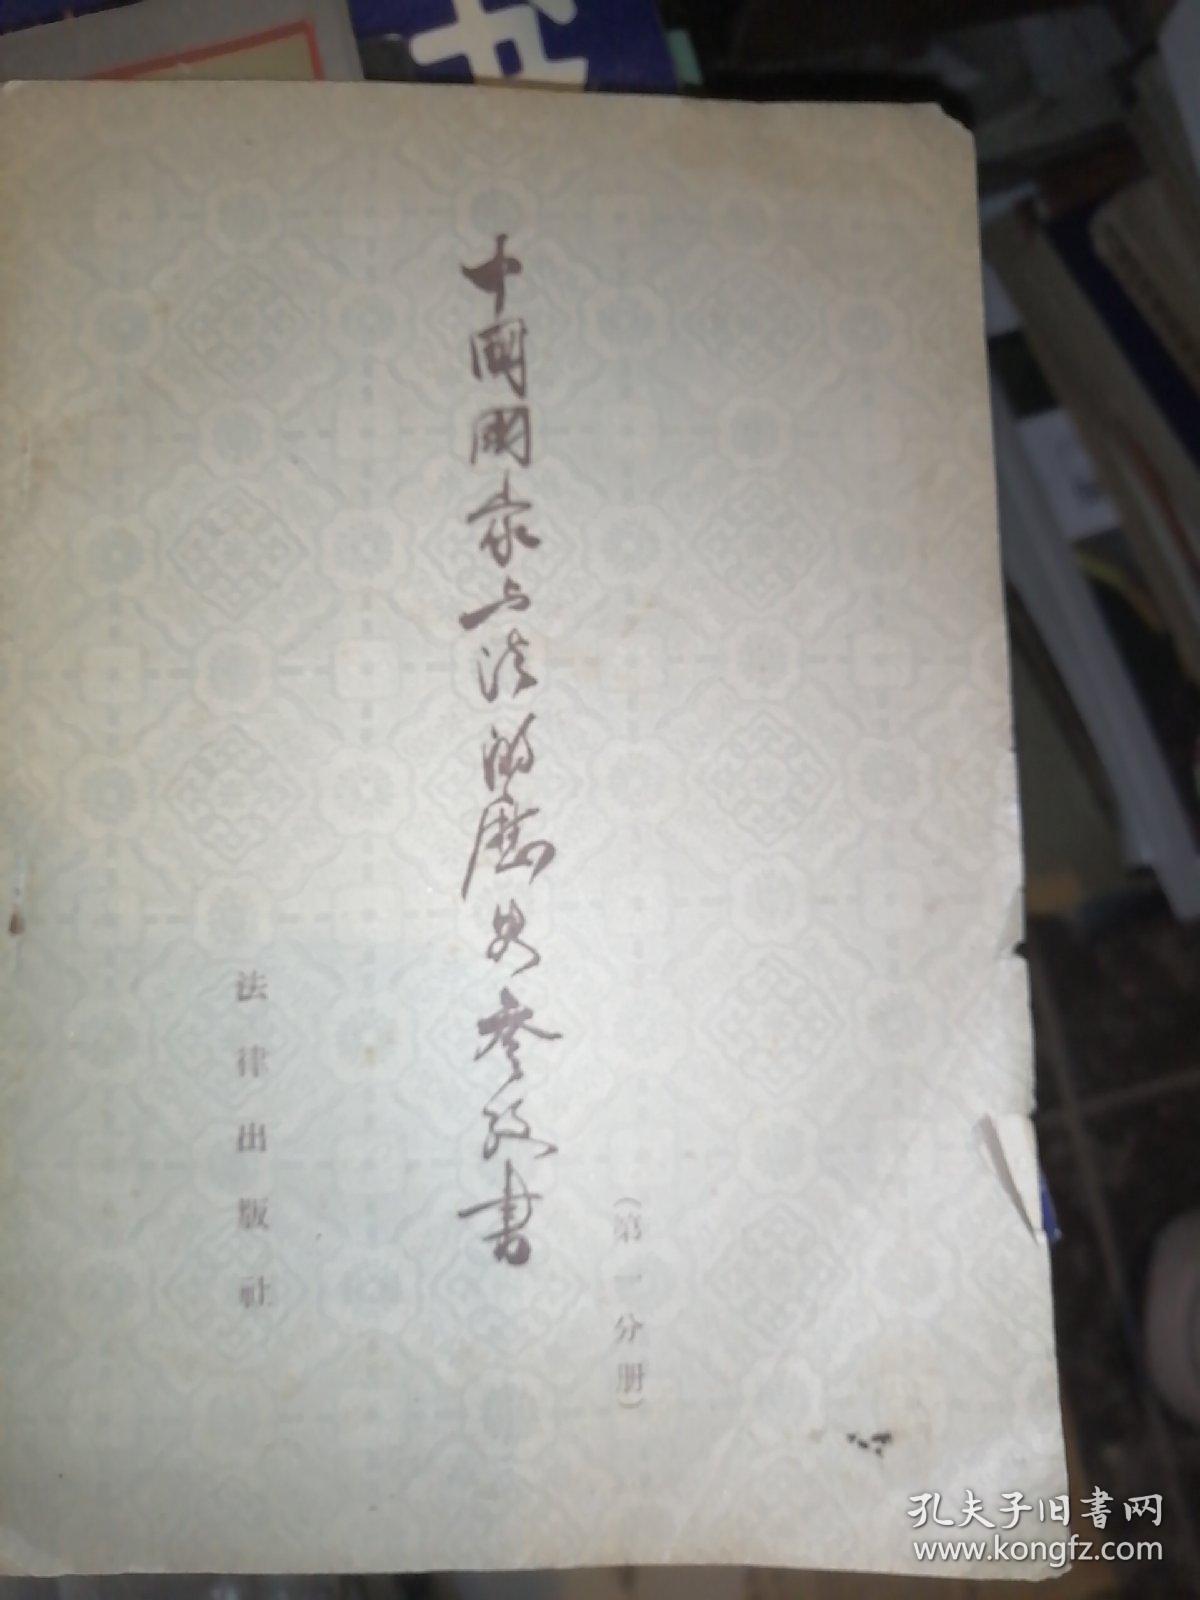 中国国家与法的历史参考书，第一分册